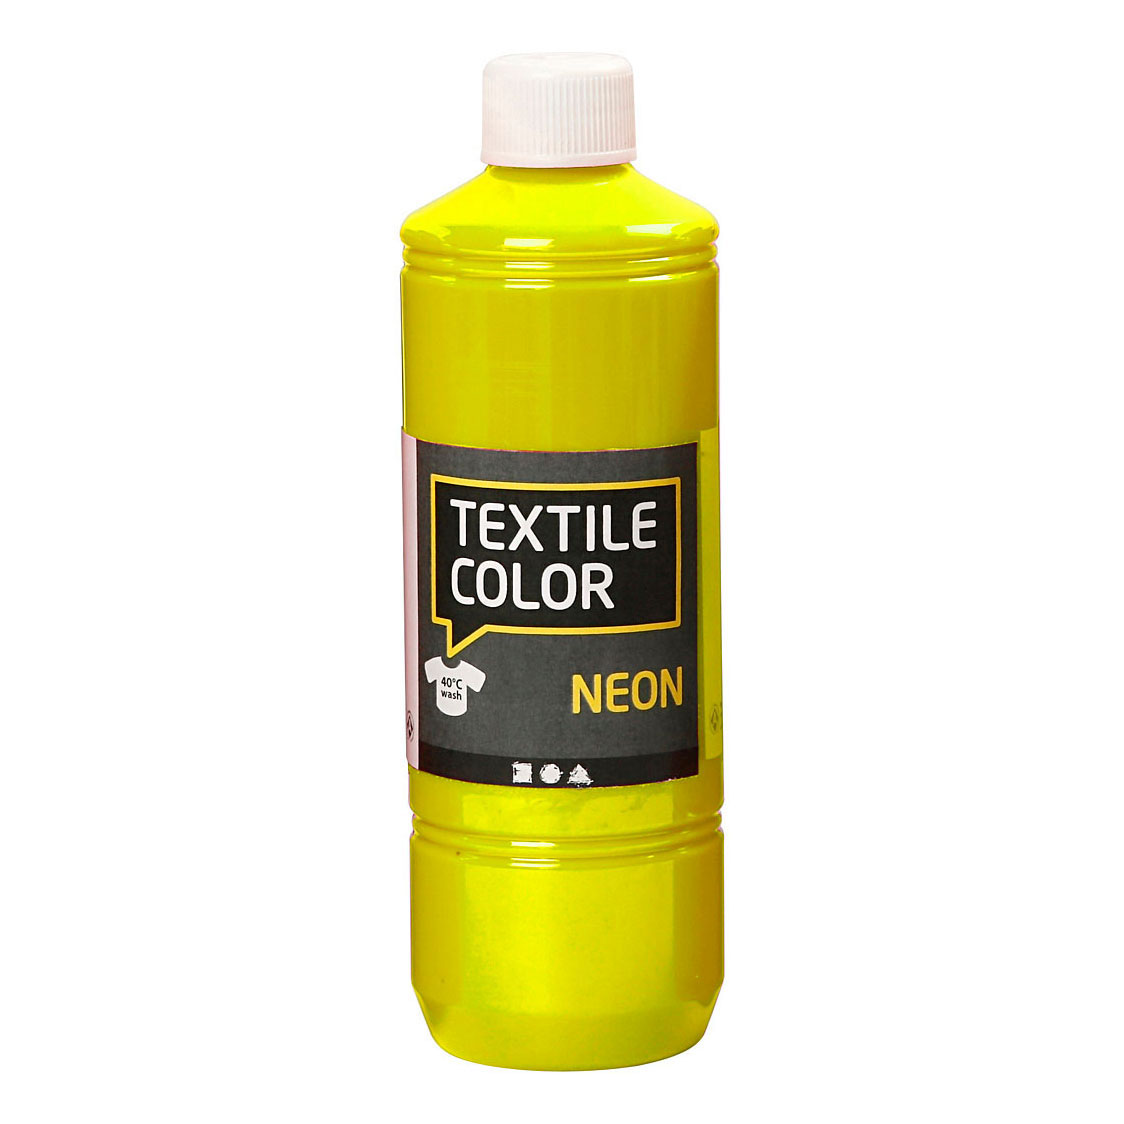 Textile Color Semi-dekkende Textielverf - Neon Geel, 500ml